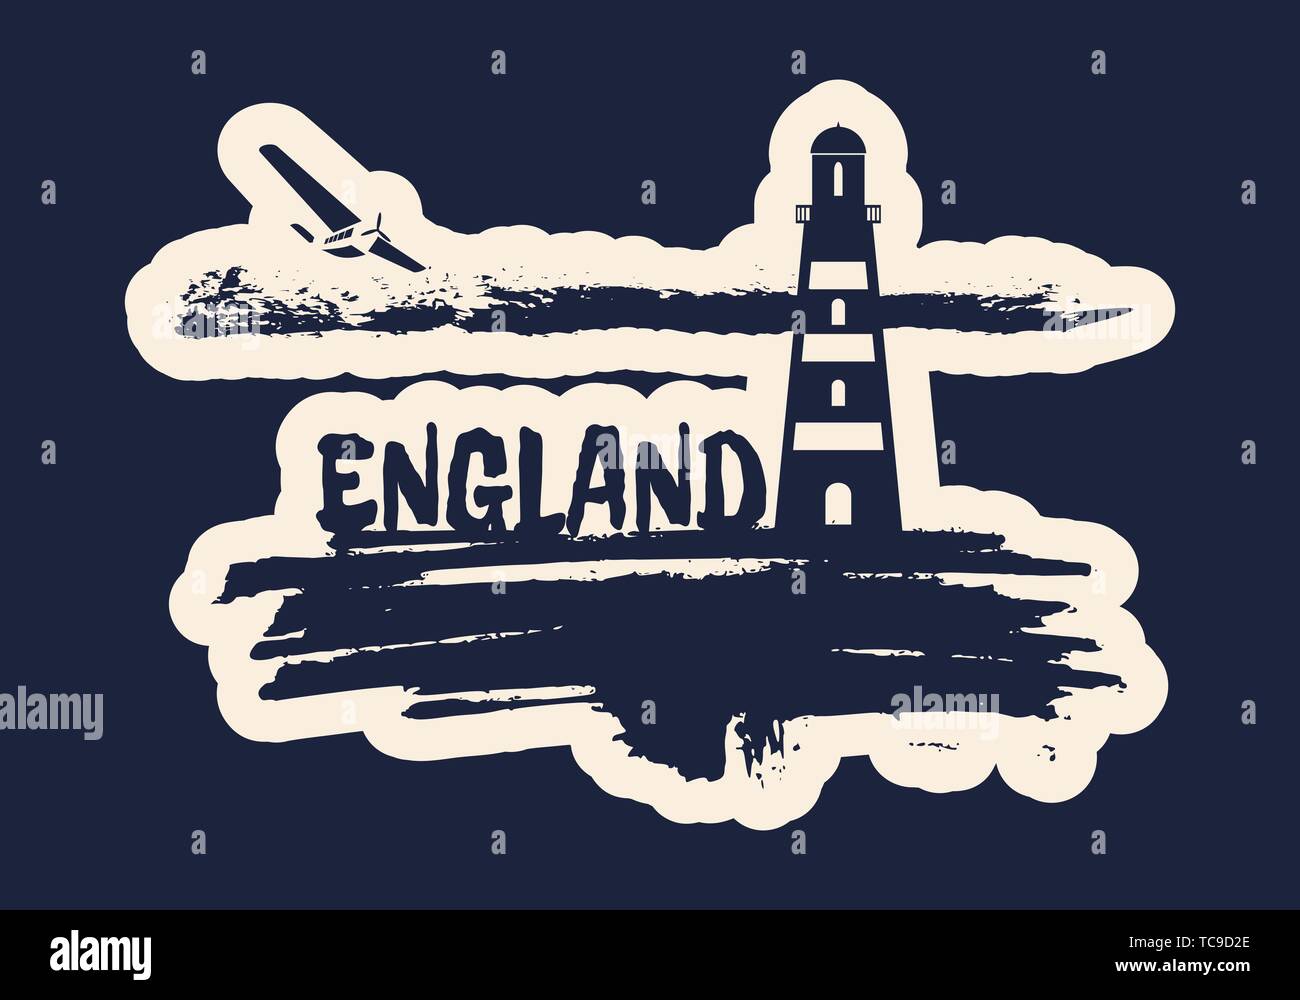 Leuchtturm auf pinselstrich Seashore. Wolken mit retro Flugzeug. England Land name Text. Stockfoto